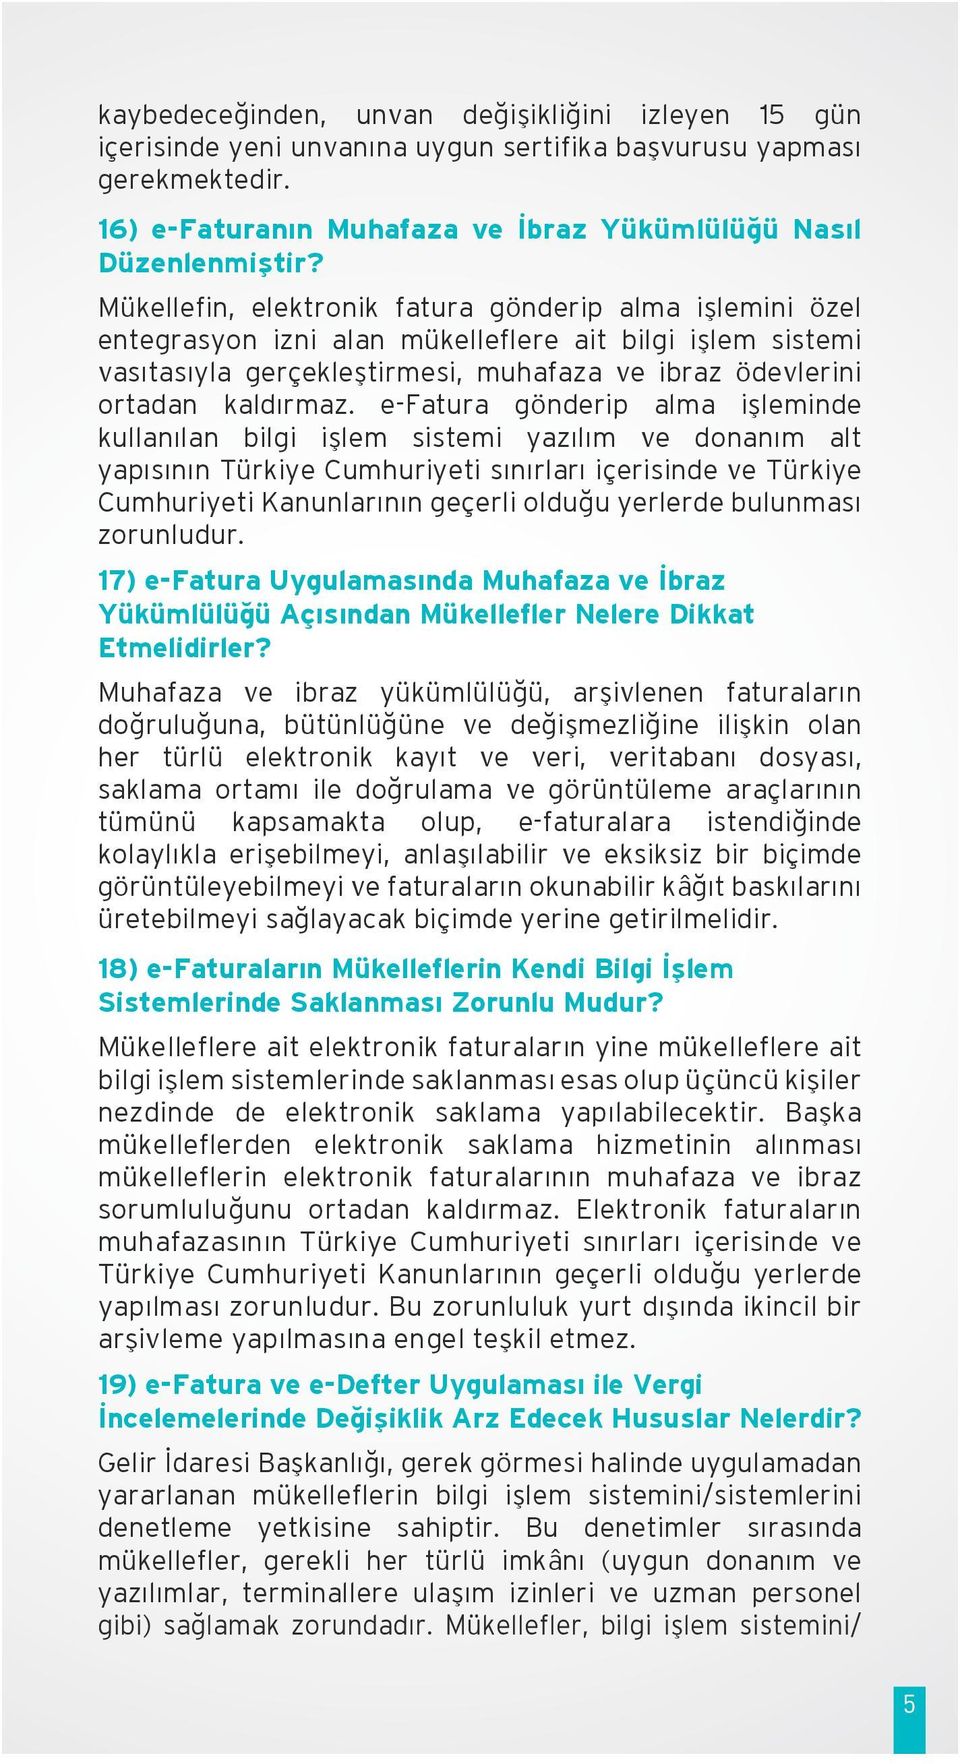 e-fatura gönderip alma işleminde kullanılan bilgi işlem sistemi yazılım ve donanım alt yapısının Türkiye Cumhuriyeti sınırları içerisinde ve Türkiye Cumhuriyeti Kanunlarının geçerli olduğu yerlerde